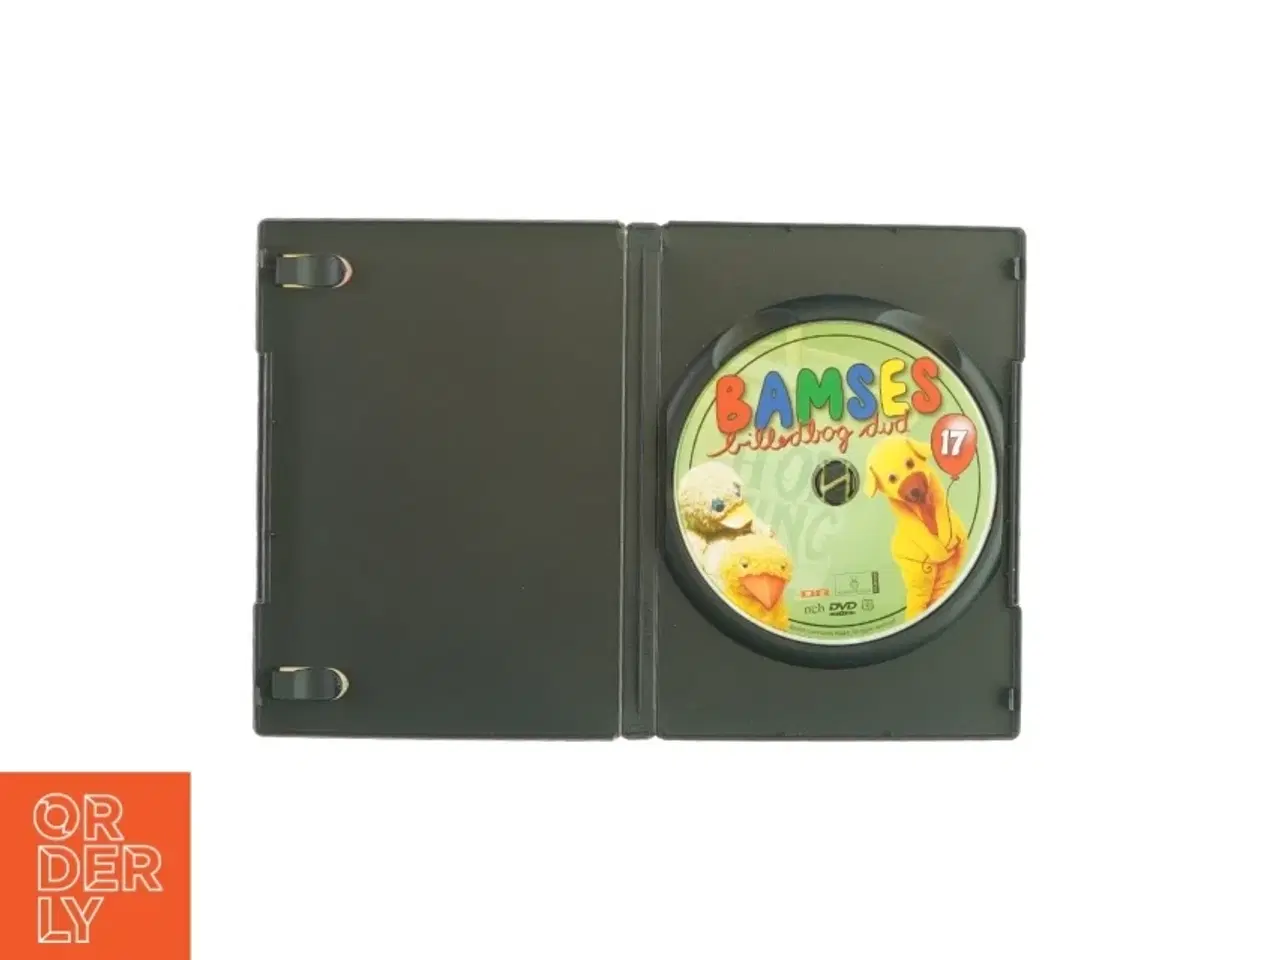 Billede 3 - Bamses billedbog 17 (DVD)